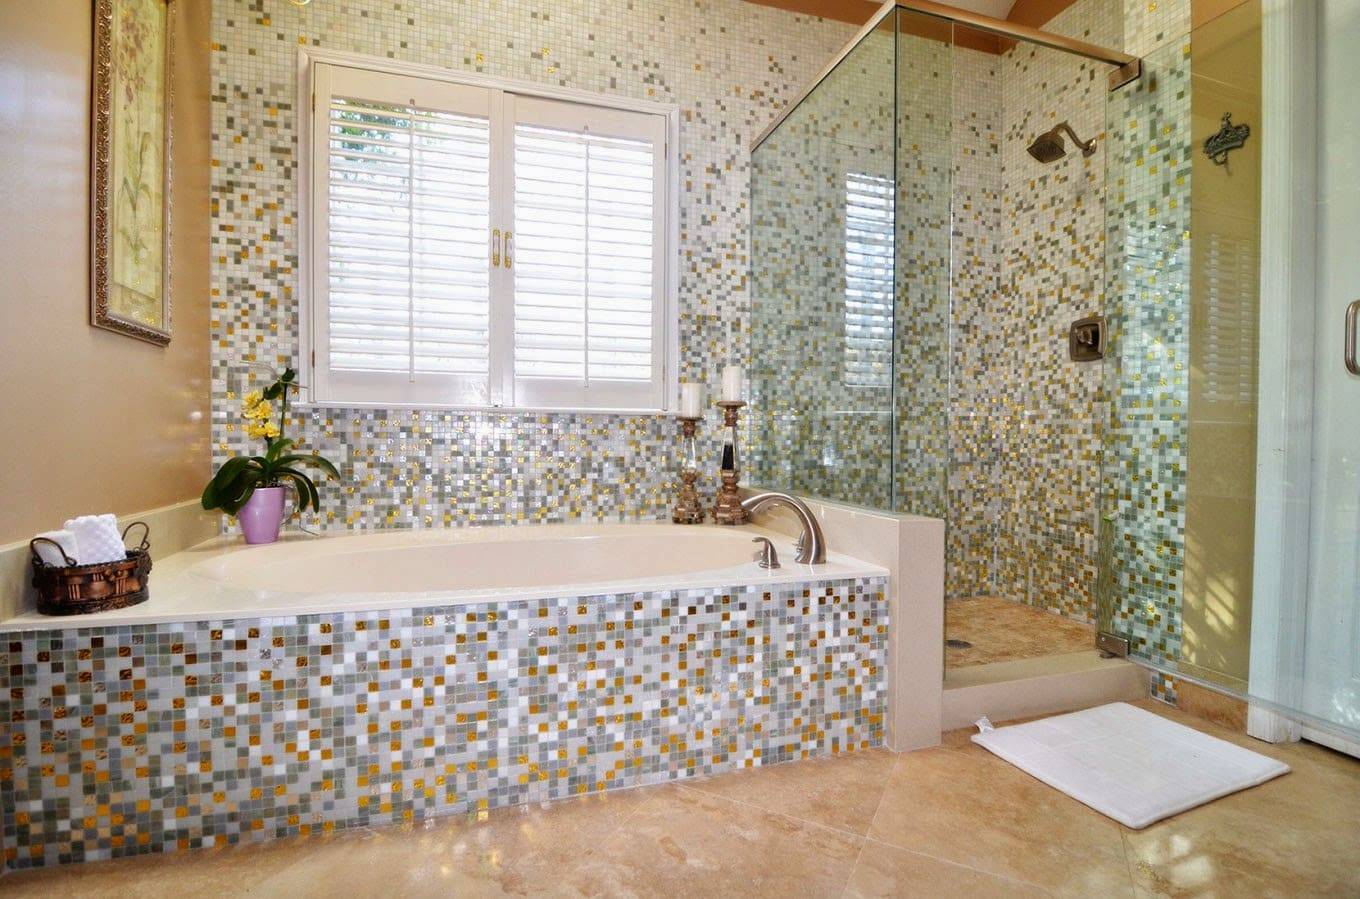 Как клеить мозаику в ванной комнате самостоятельно: технология укладки и выбор клеевой основы